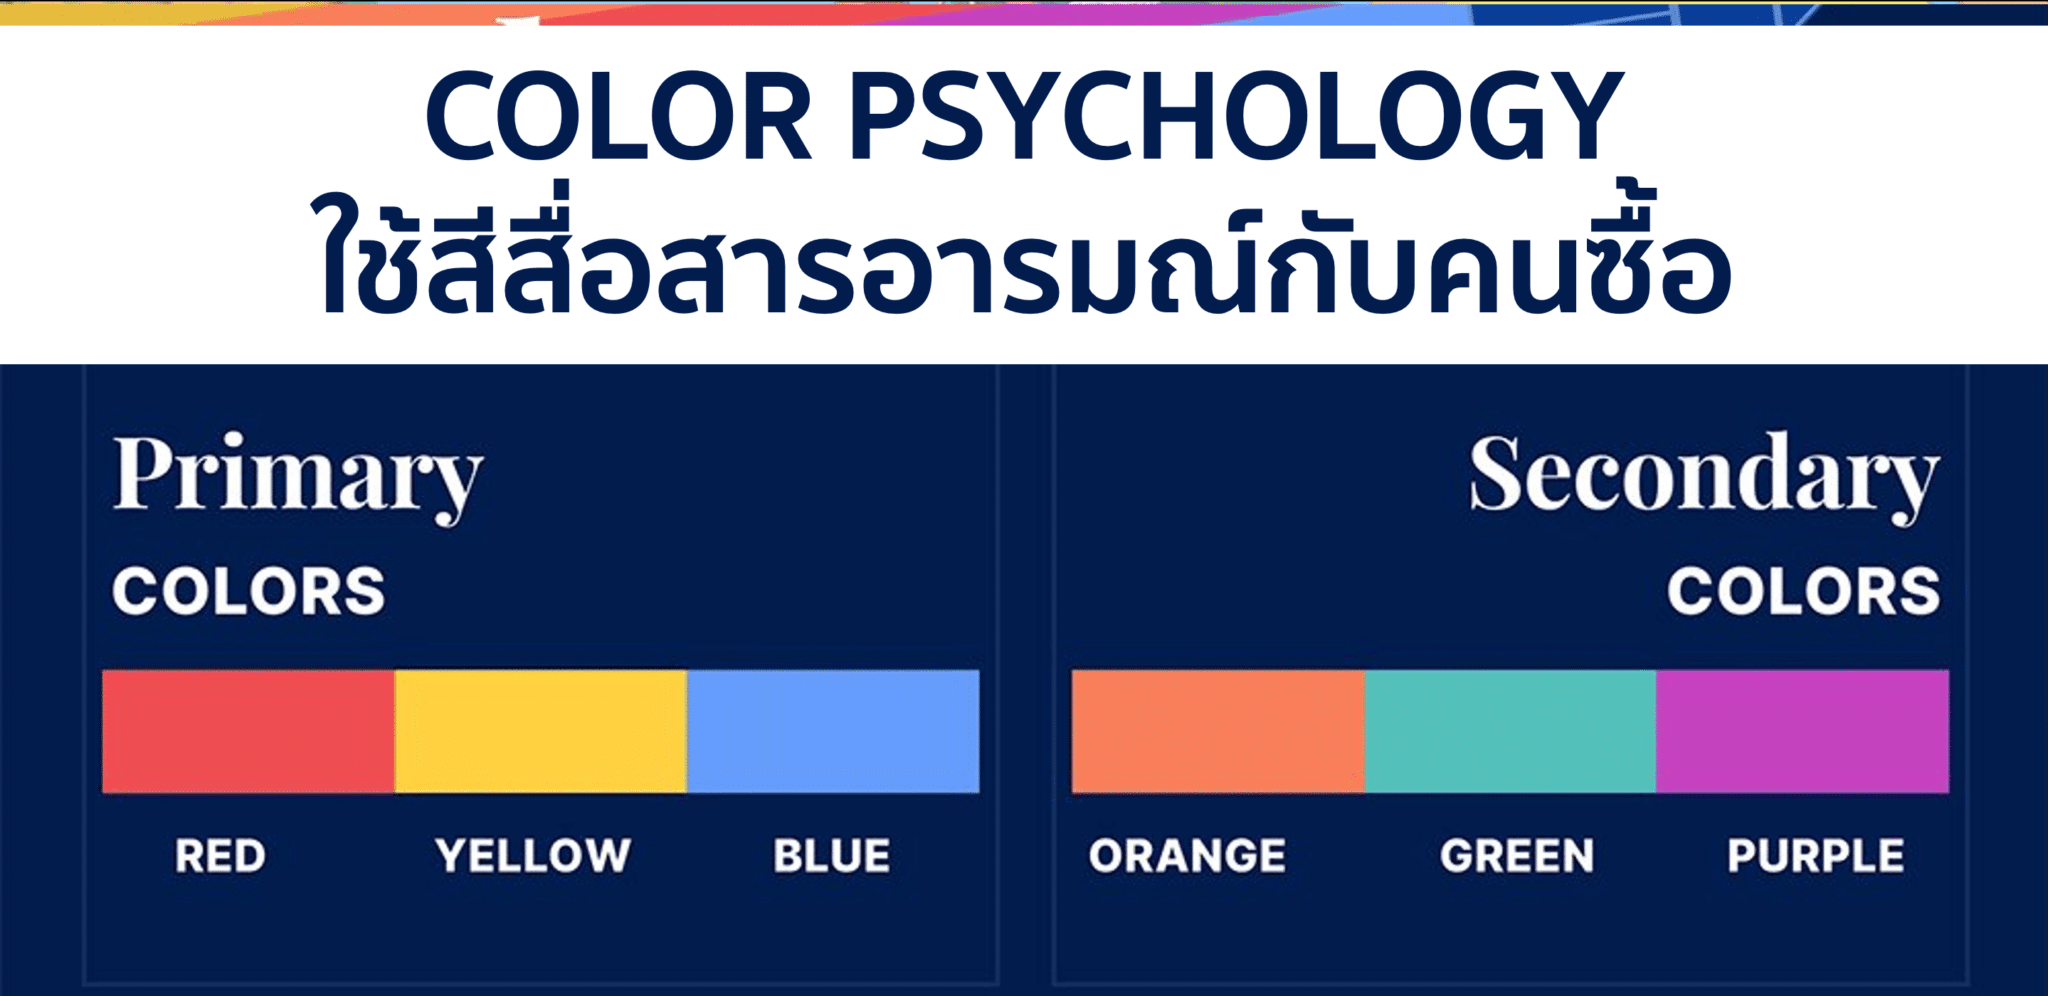 Color Psychology ใช้สีสื่อสารกับอารมณ์ ความรู้สึกคนซื้อ